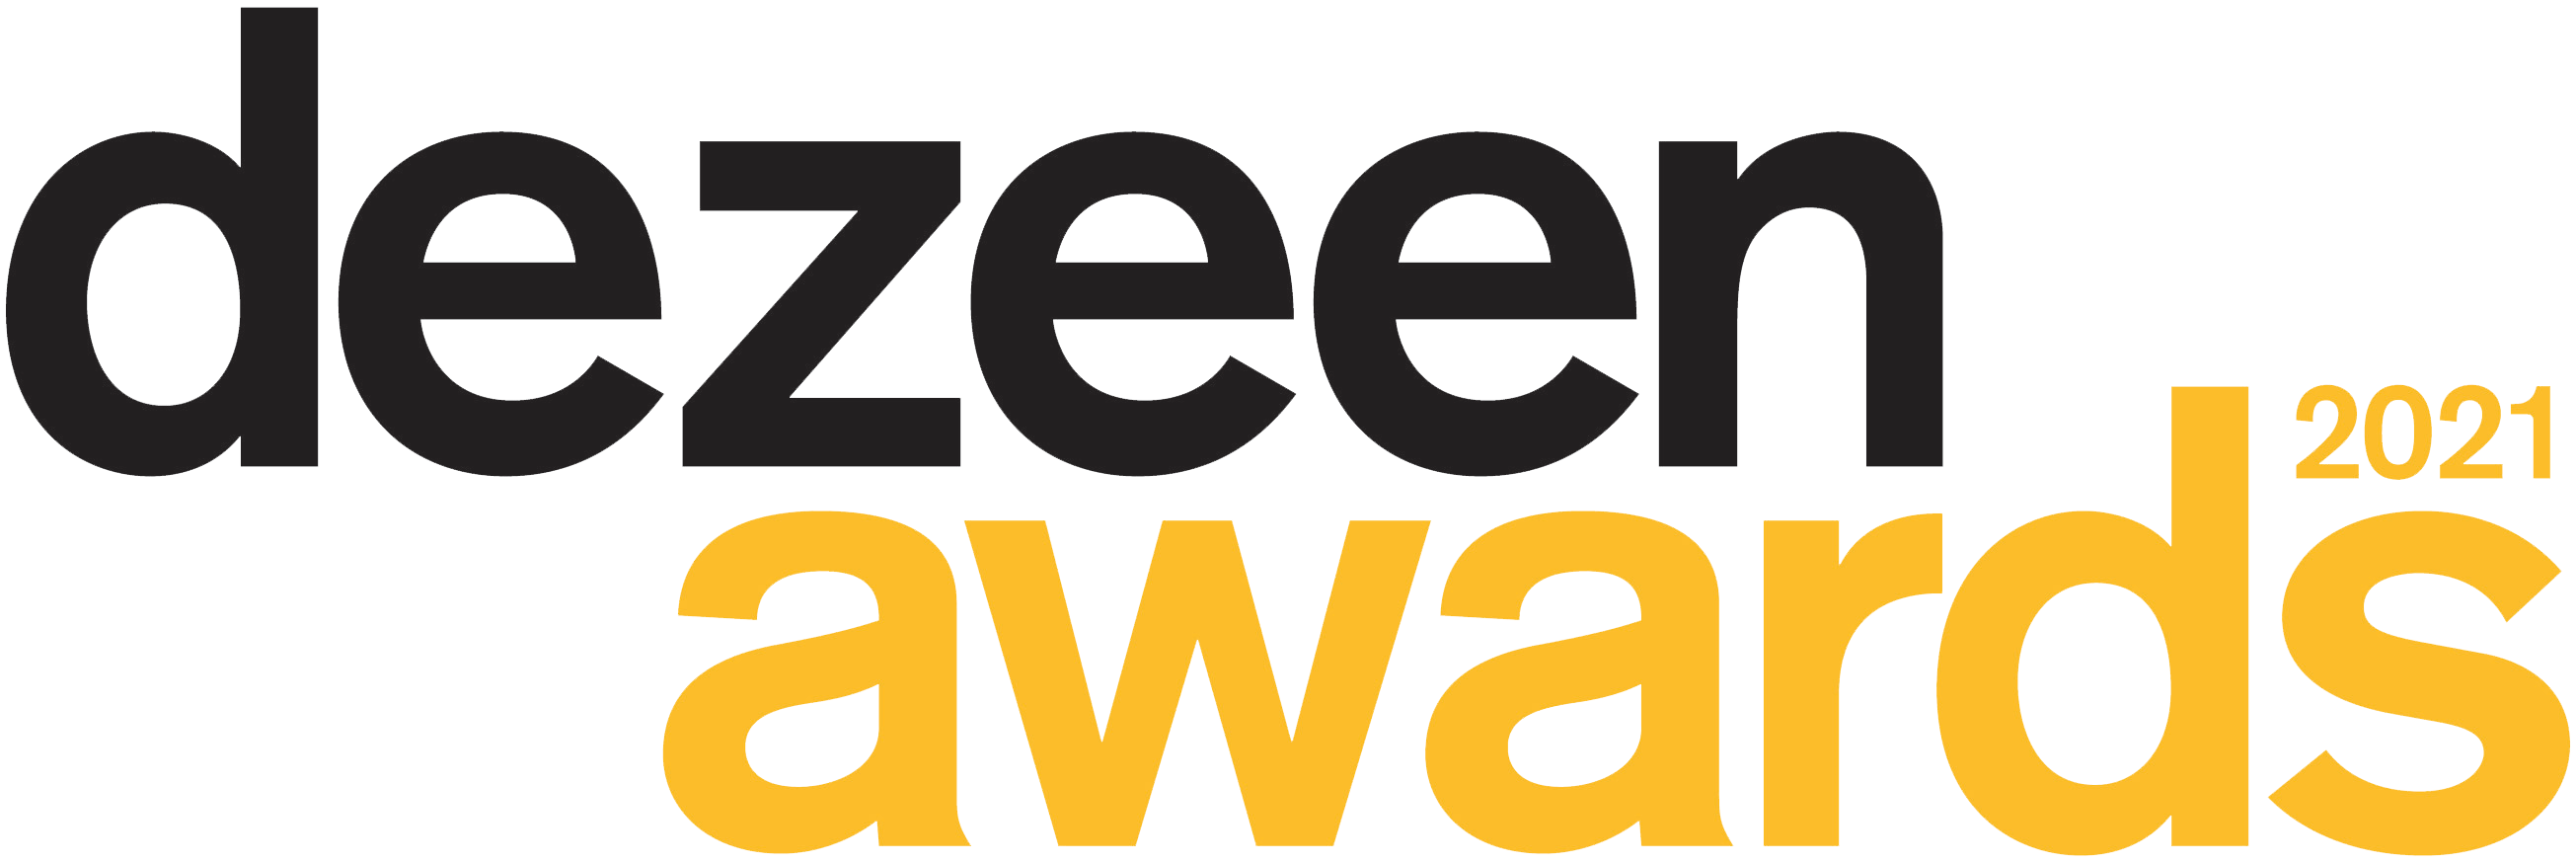 2021 – dezeen awards